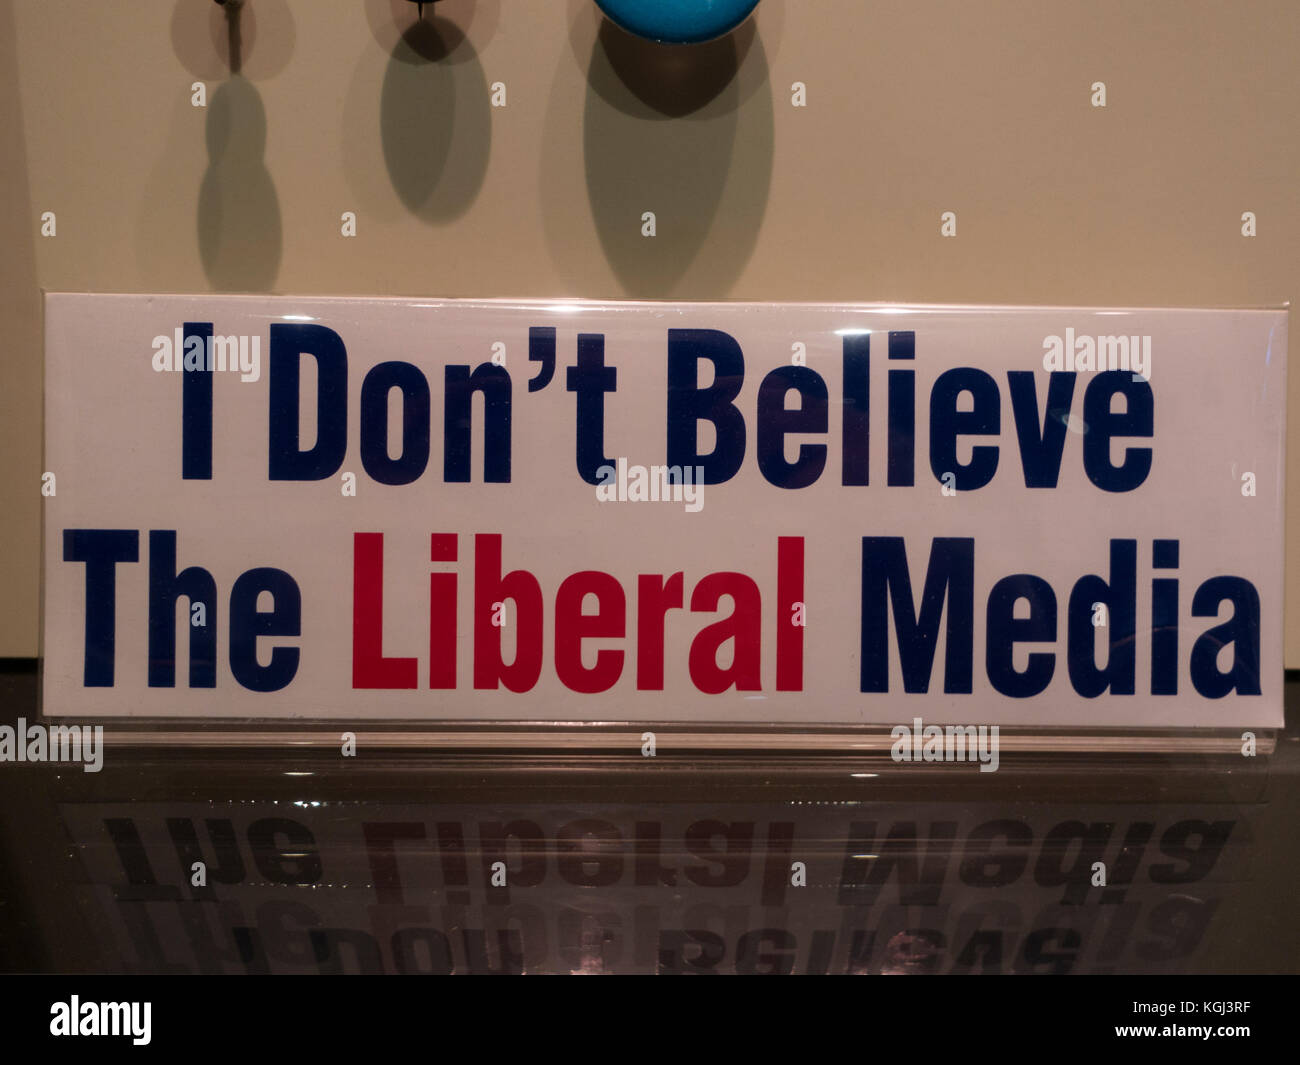 "Ich Abzeichen die liberalen Medien' auf dem Display im Newseum, ein interaktives Museum in Washington DC, USA nicht Glauben. Stockfoto